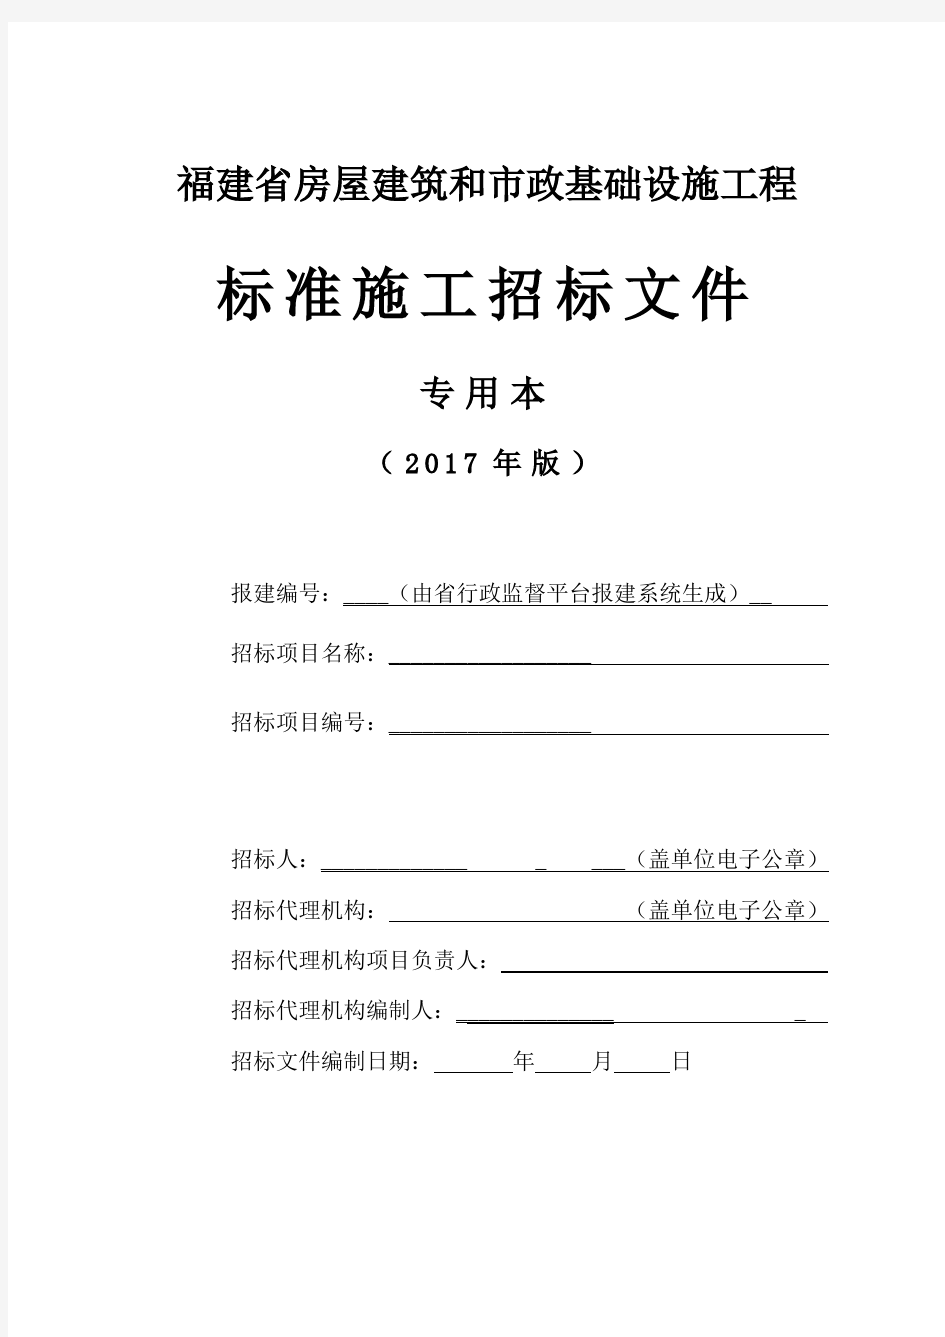 福建省标准施工招标文件(2017年版)-专用本